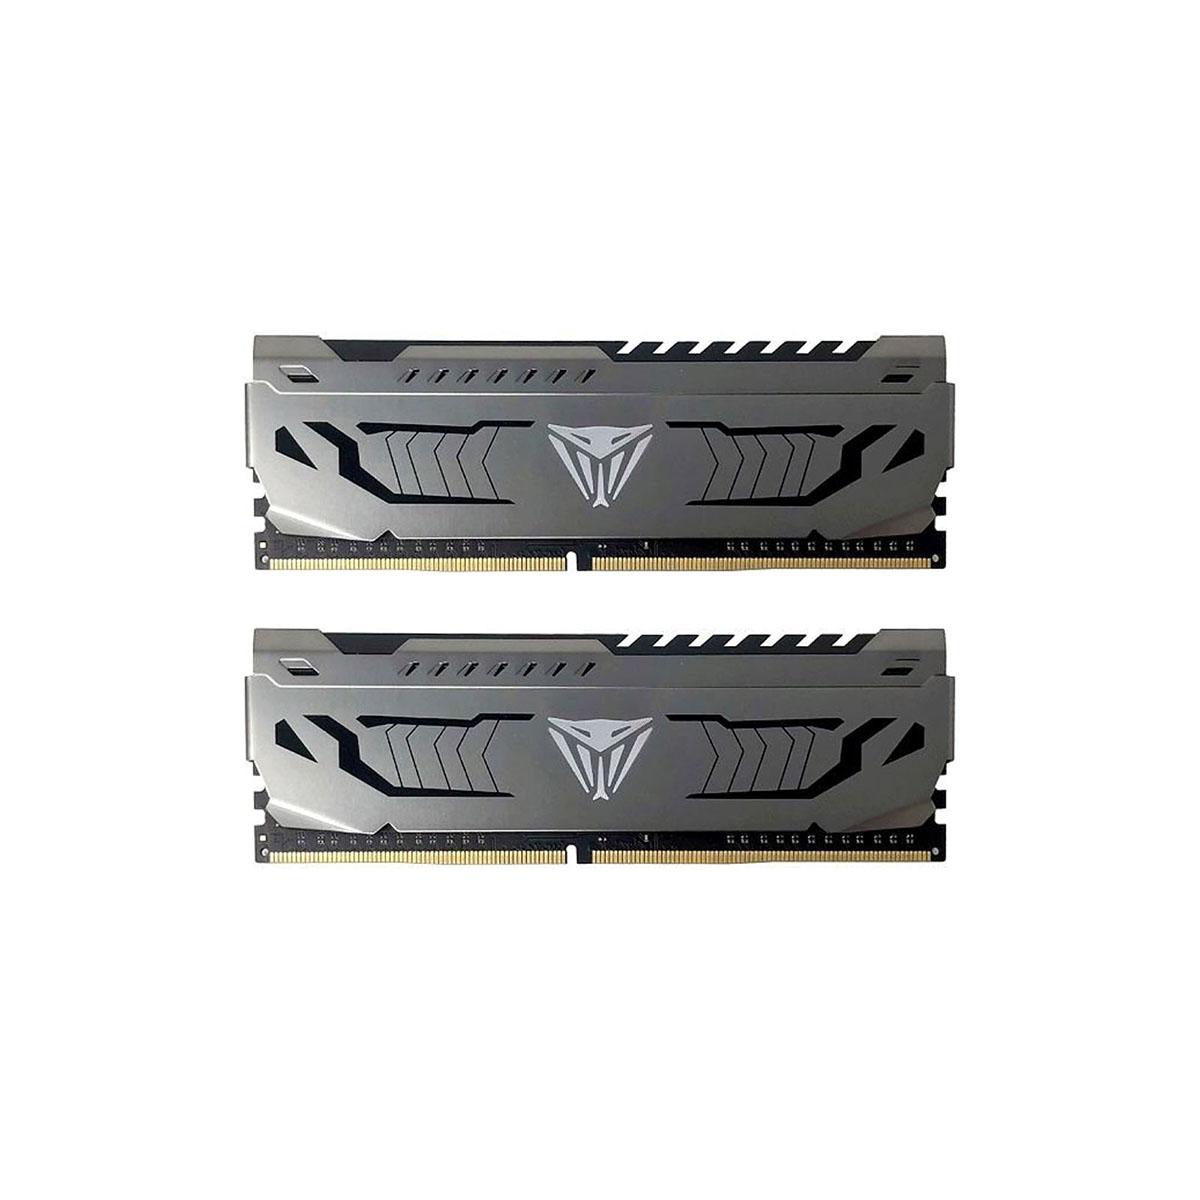 MEMORIA DIMM DDR4 PATRIOT (PVS416G300C6K) VIPER STEEL 16GB 3000MHZ KIT (2X8GB), GRAY HEATSINK,CL16 - PATRIOT